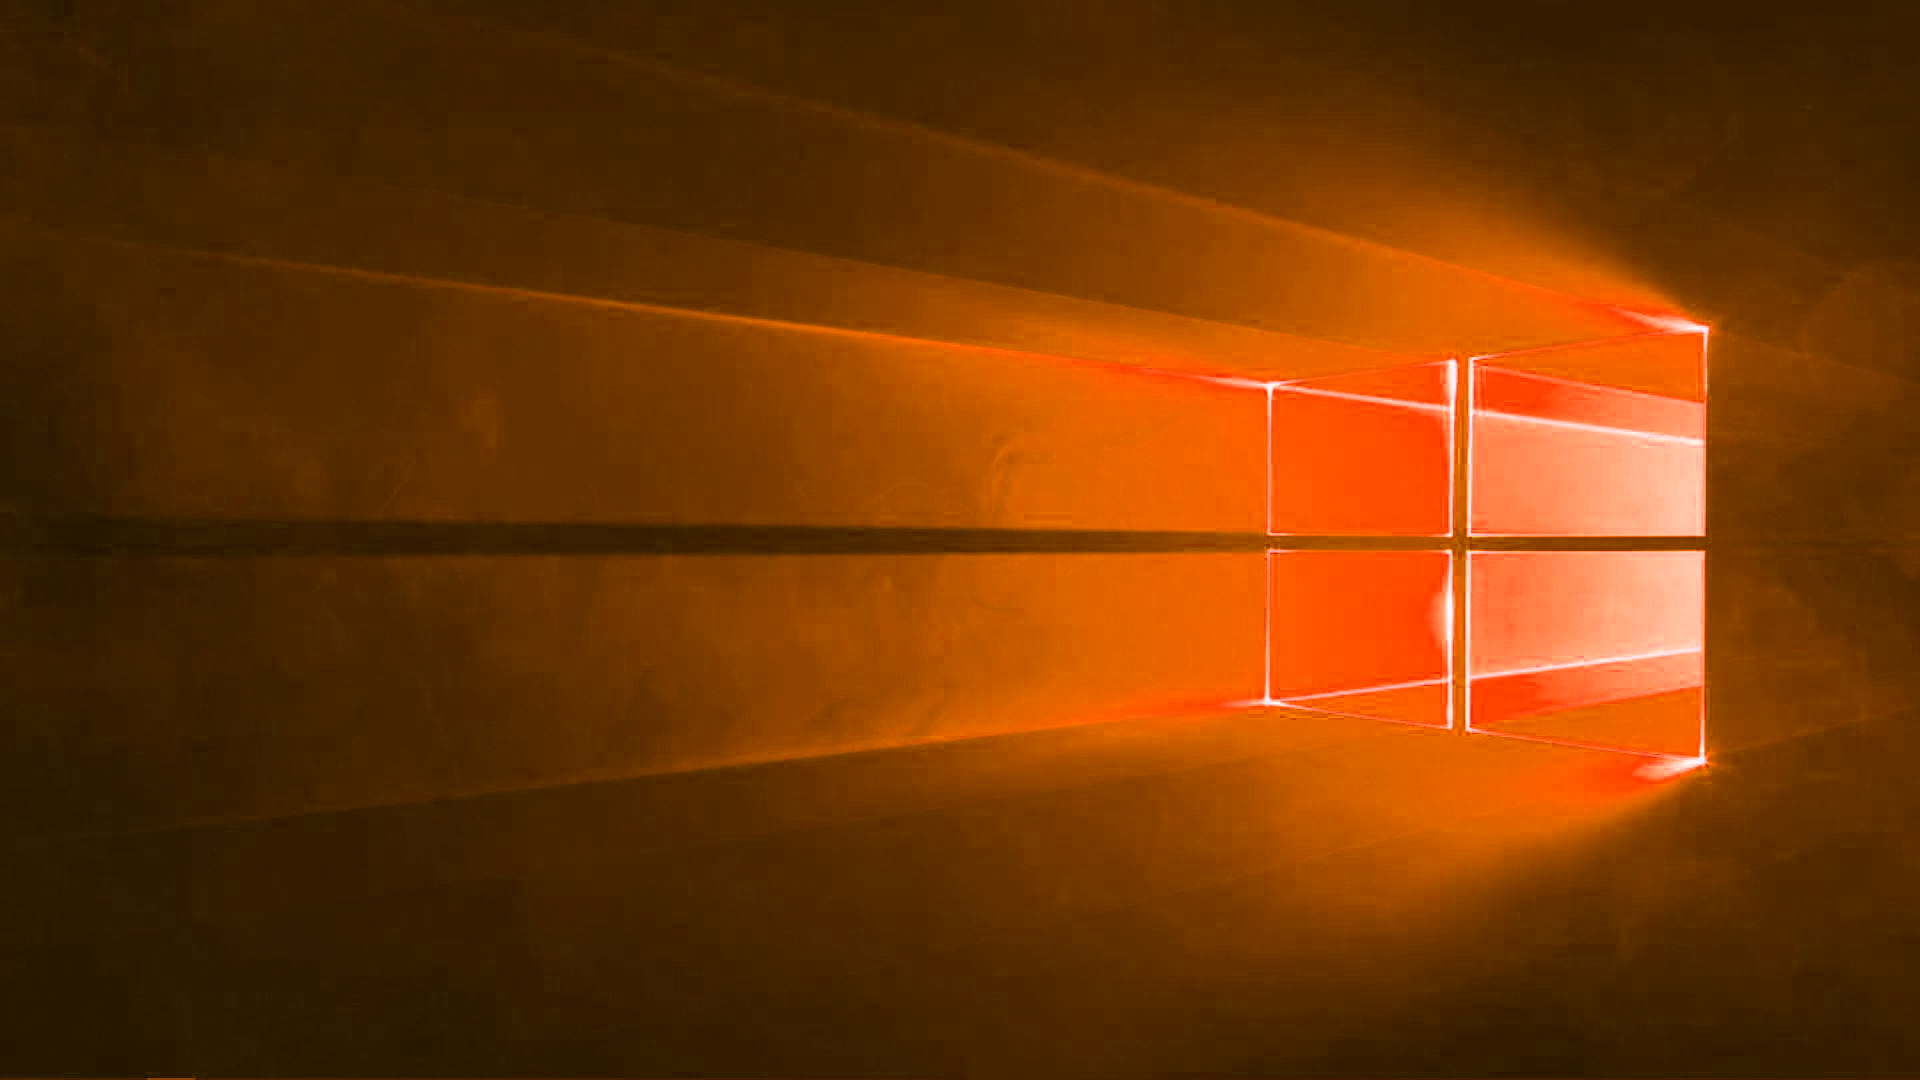 Hình nền Windows 10 màu cam sẽ mang đến cho bạn cảm giác mới lạ và độc đáo trên màn hình của bạn. Chọn một mẫu hình nền cam phù hợp với phong cách của bạn, và xem nó phản chiếu tuyệt đẹp trên màn hình máy tính của bạn. Hãy trang trí màn hình của bạn với các mẫu hình nền cam trẻ trung và sôi động này.